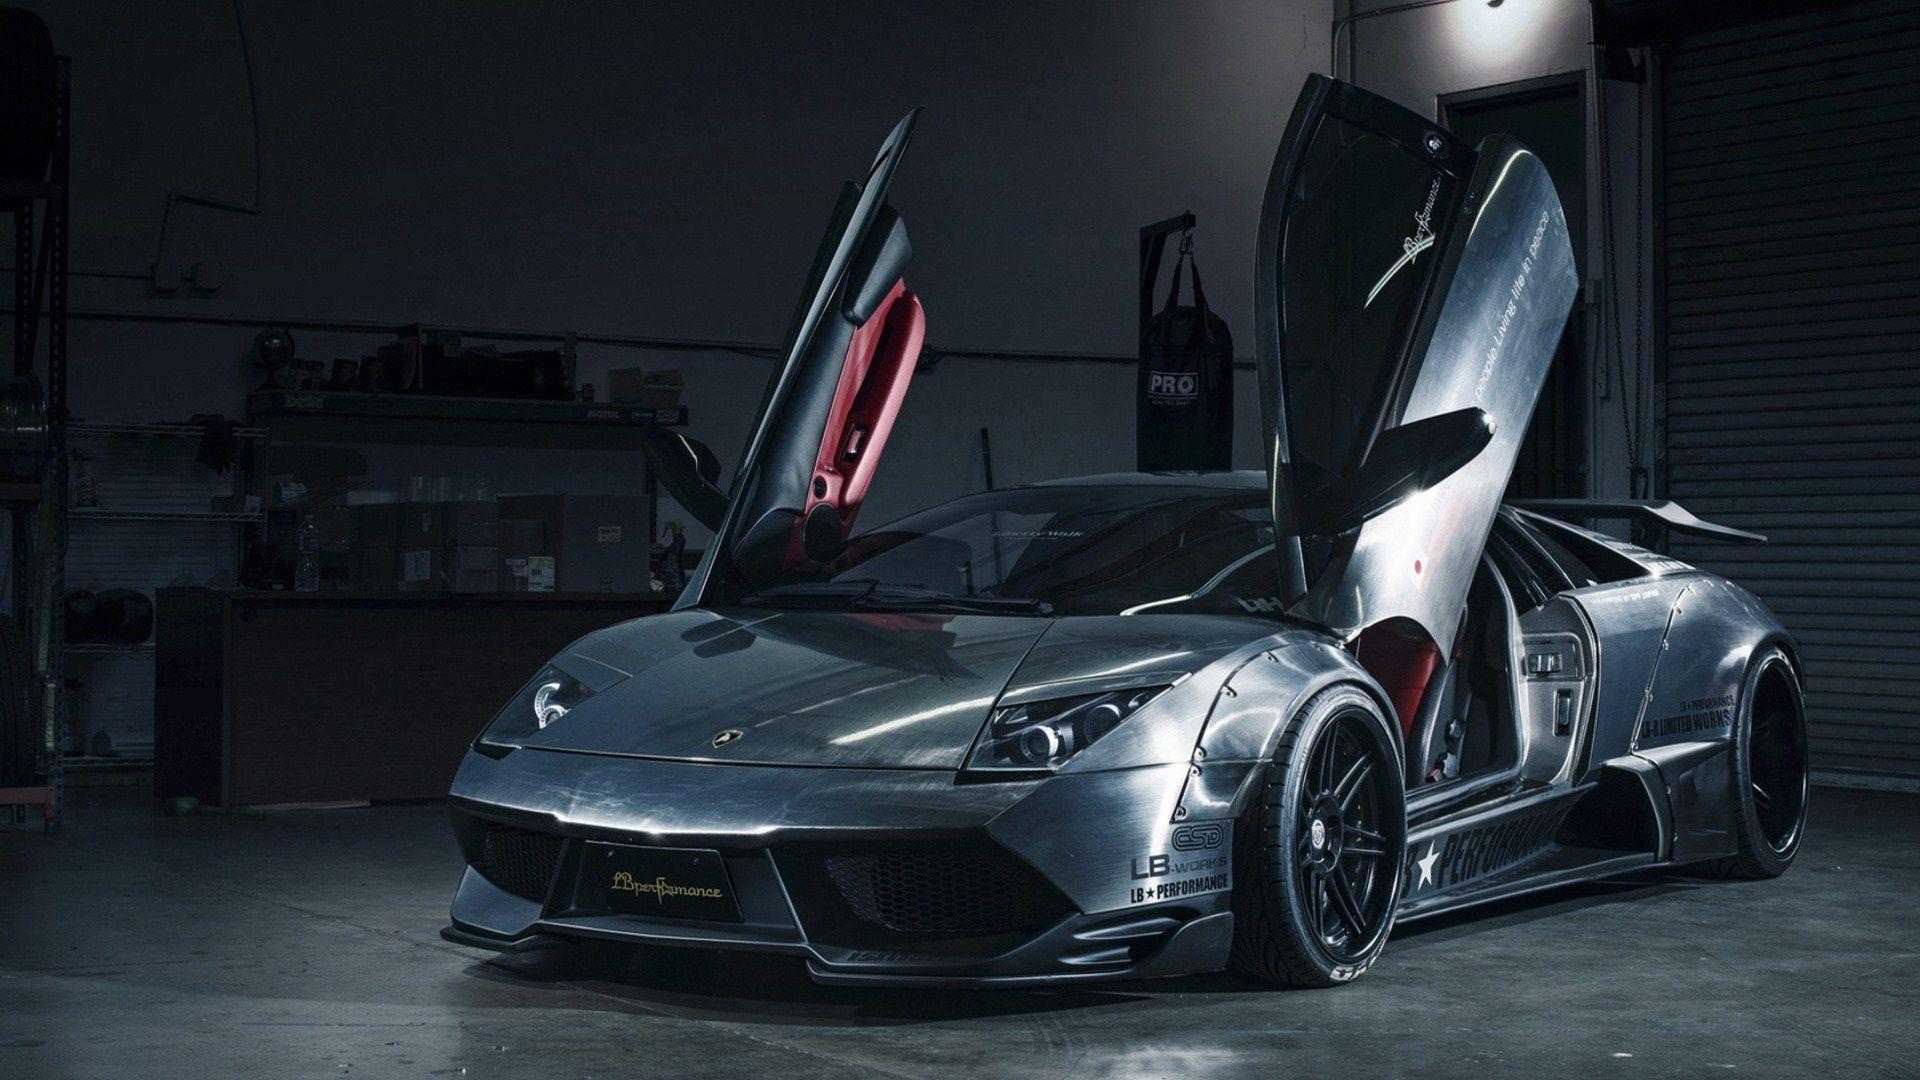 Lamborghini Murcielago by LB Performance Widebody HD